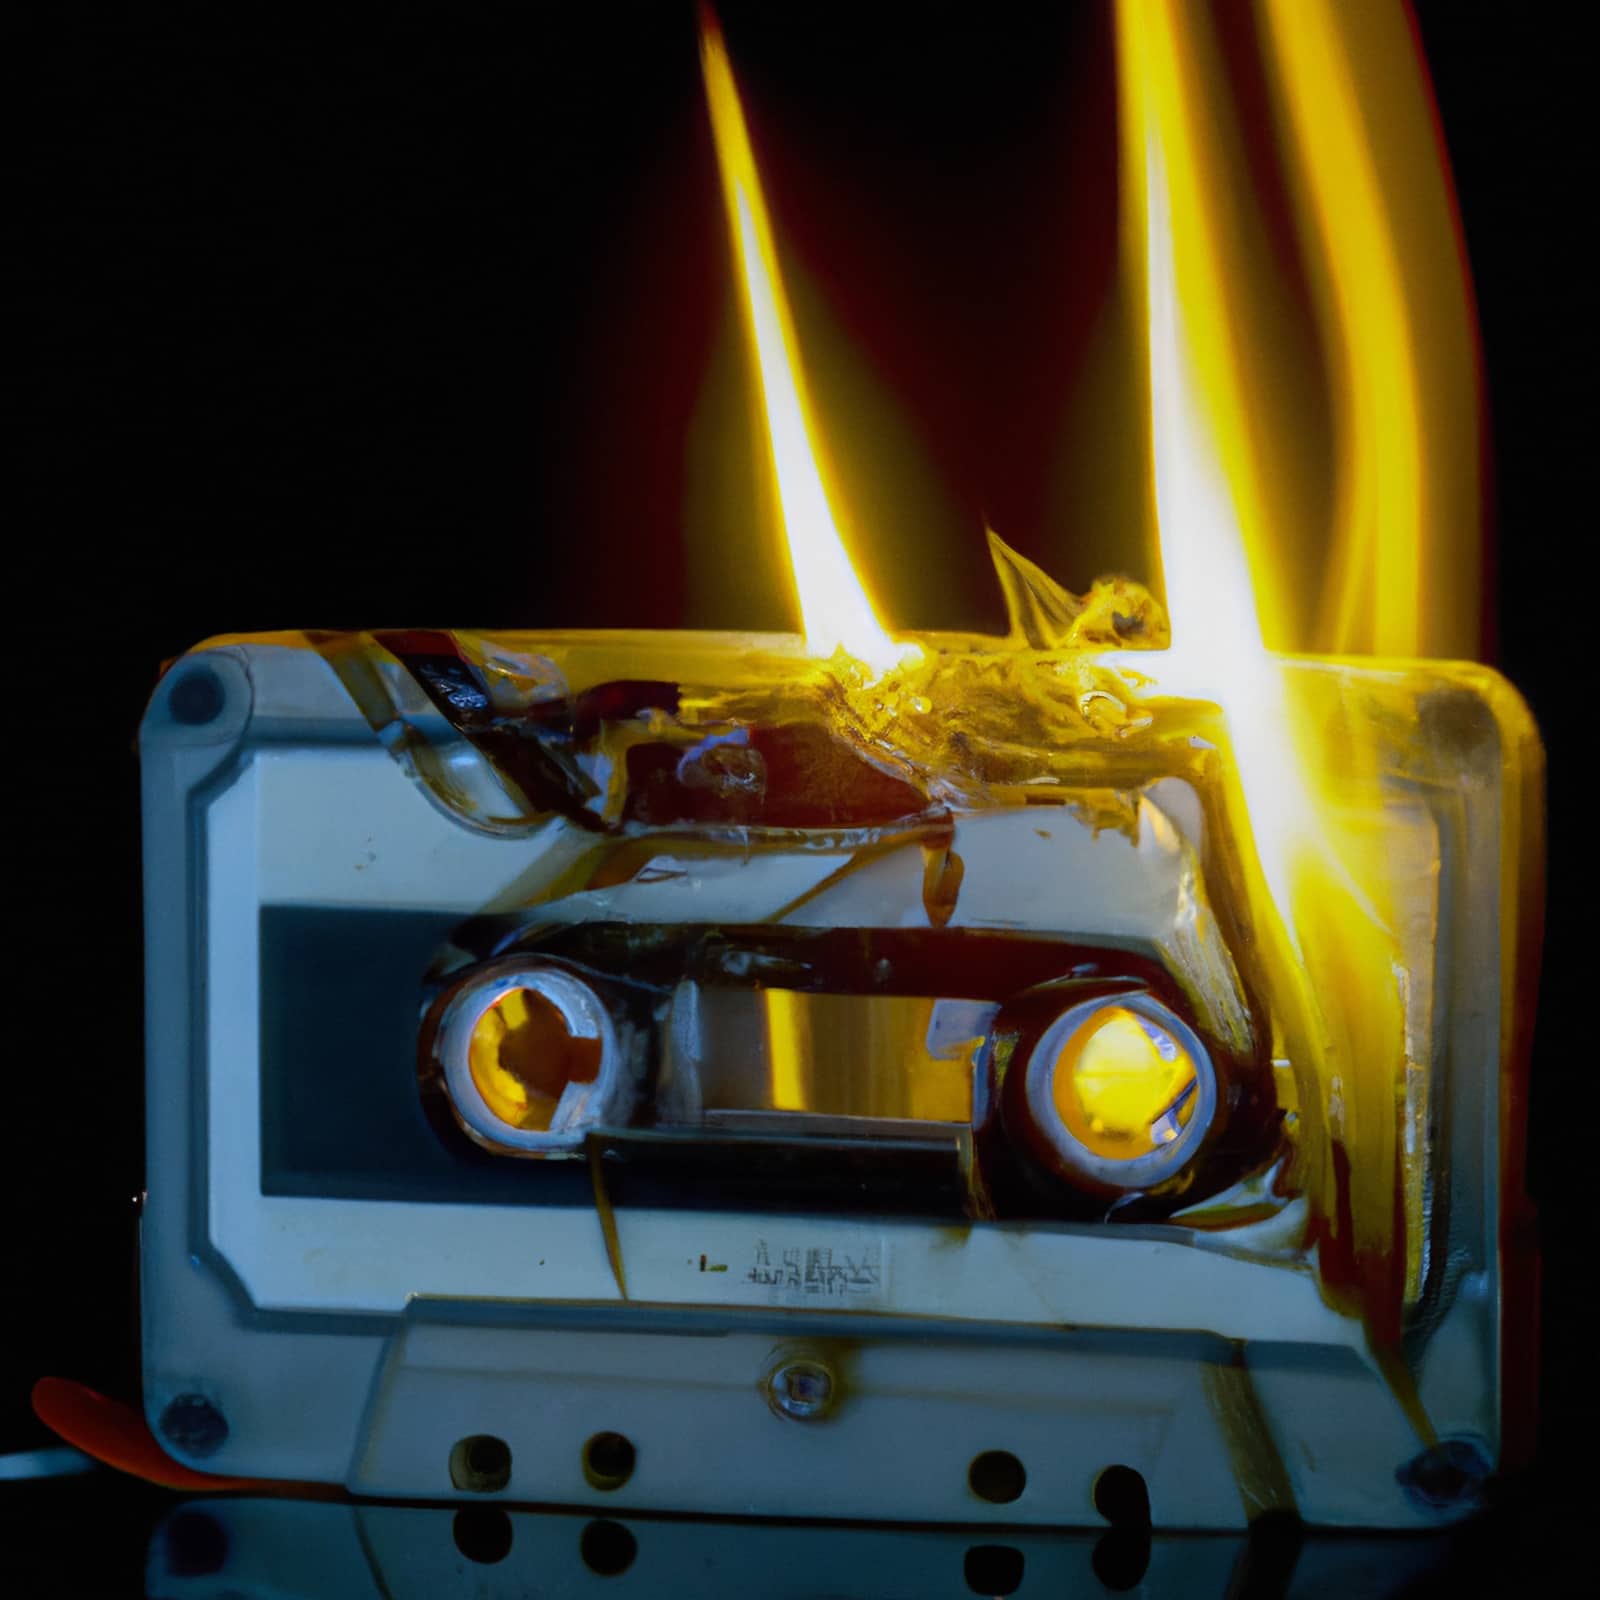 My Flaming Thirst – Soundhog Remix